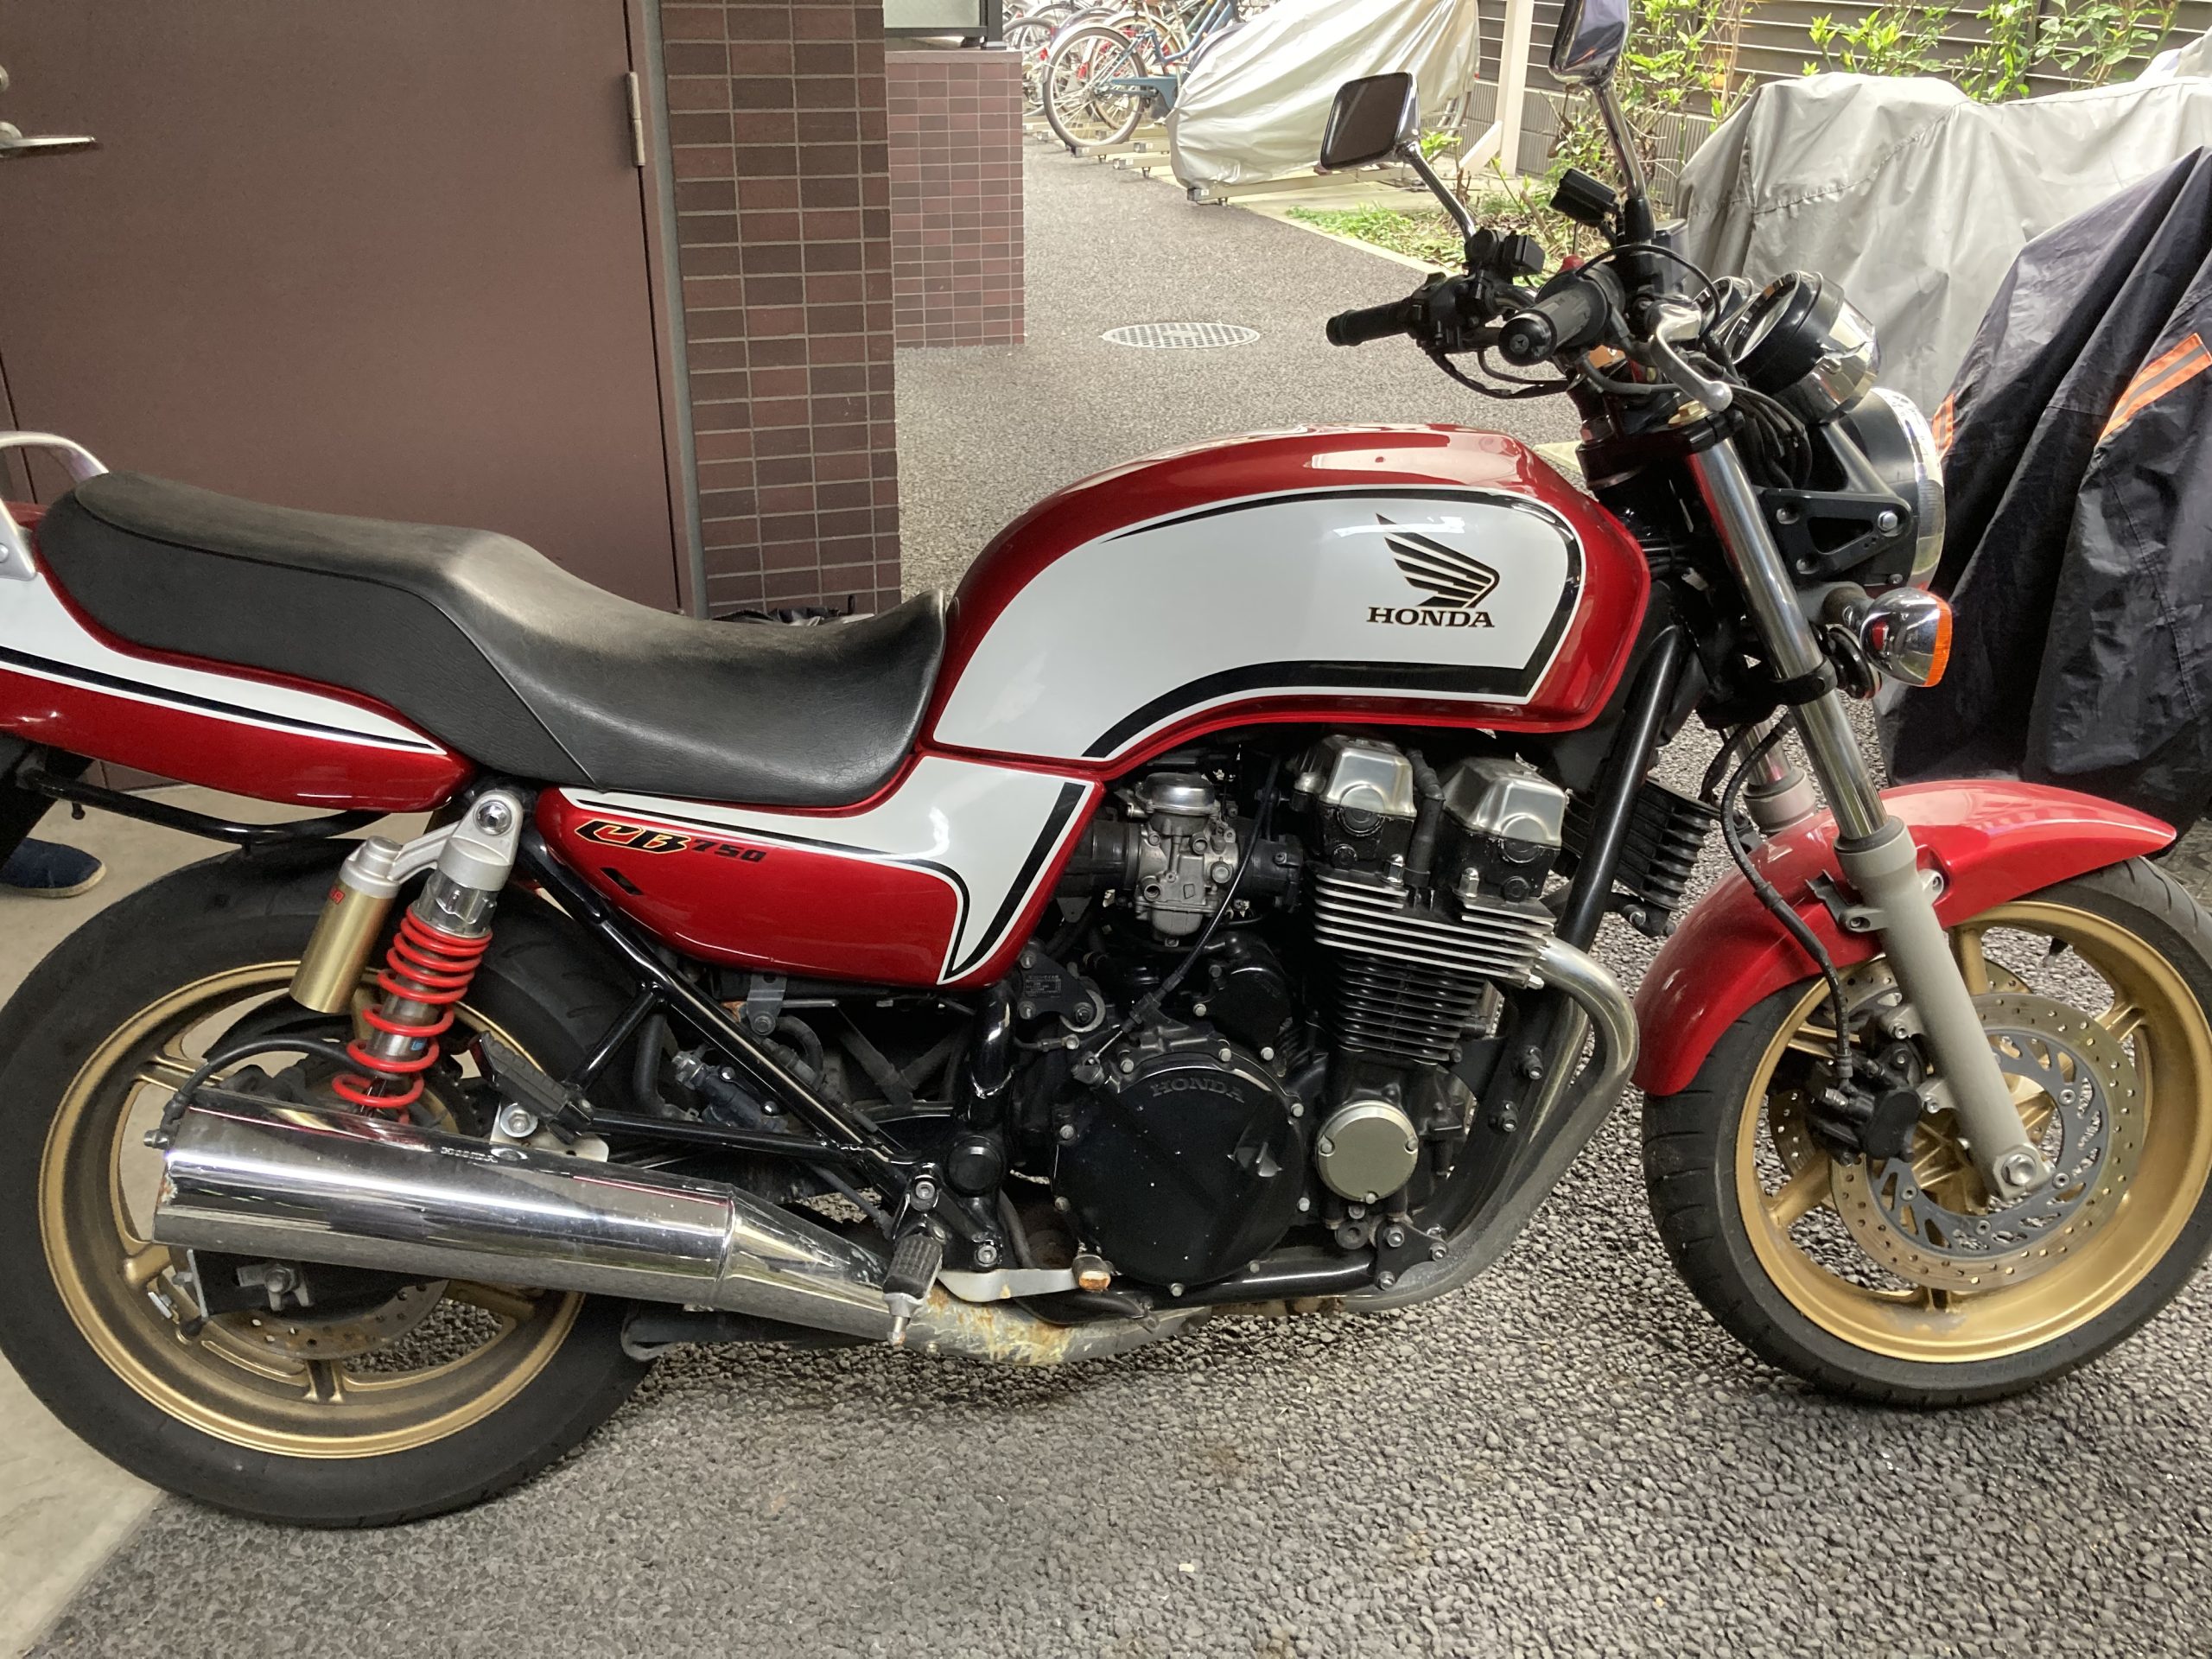 ホンダ CB750ｰ2 RC42 - バイク買取ならバイク買取ならバイク査定ドットコム